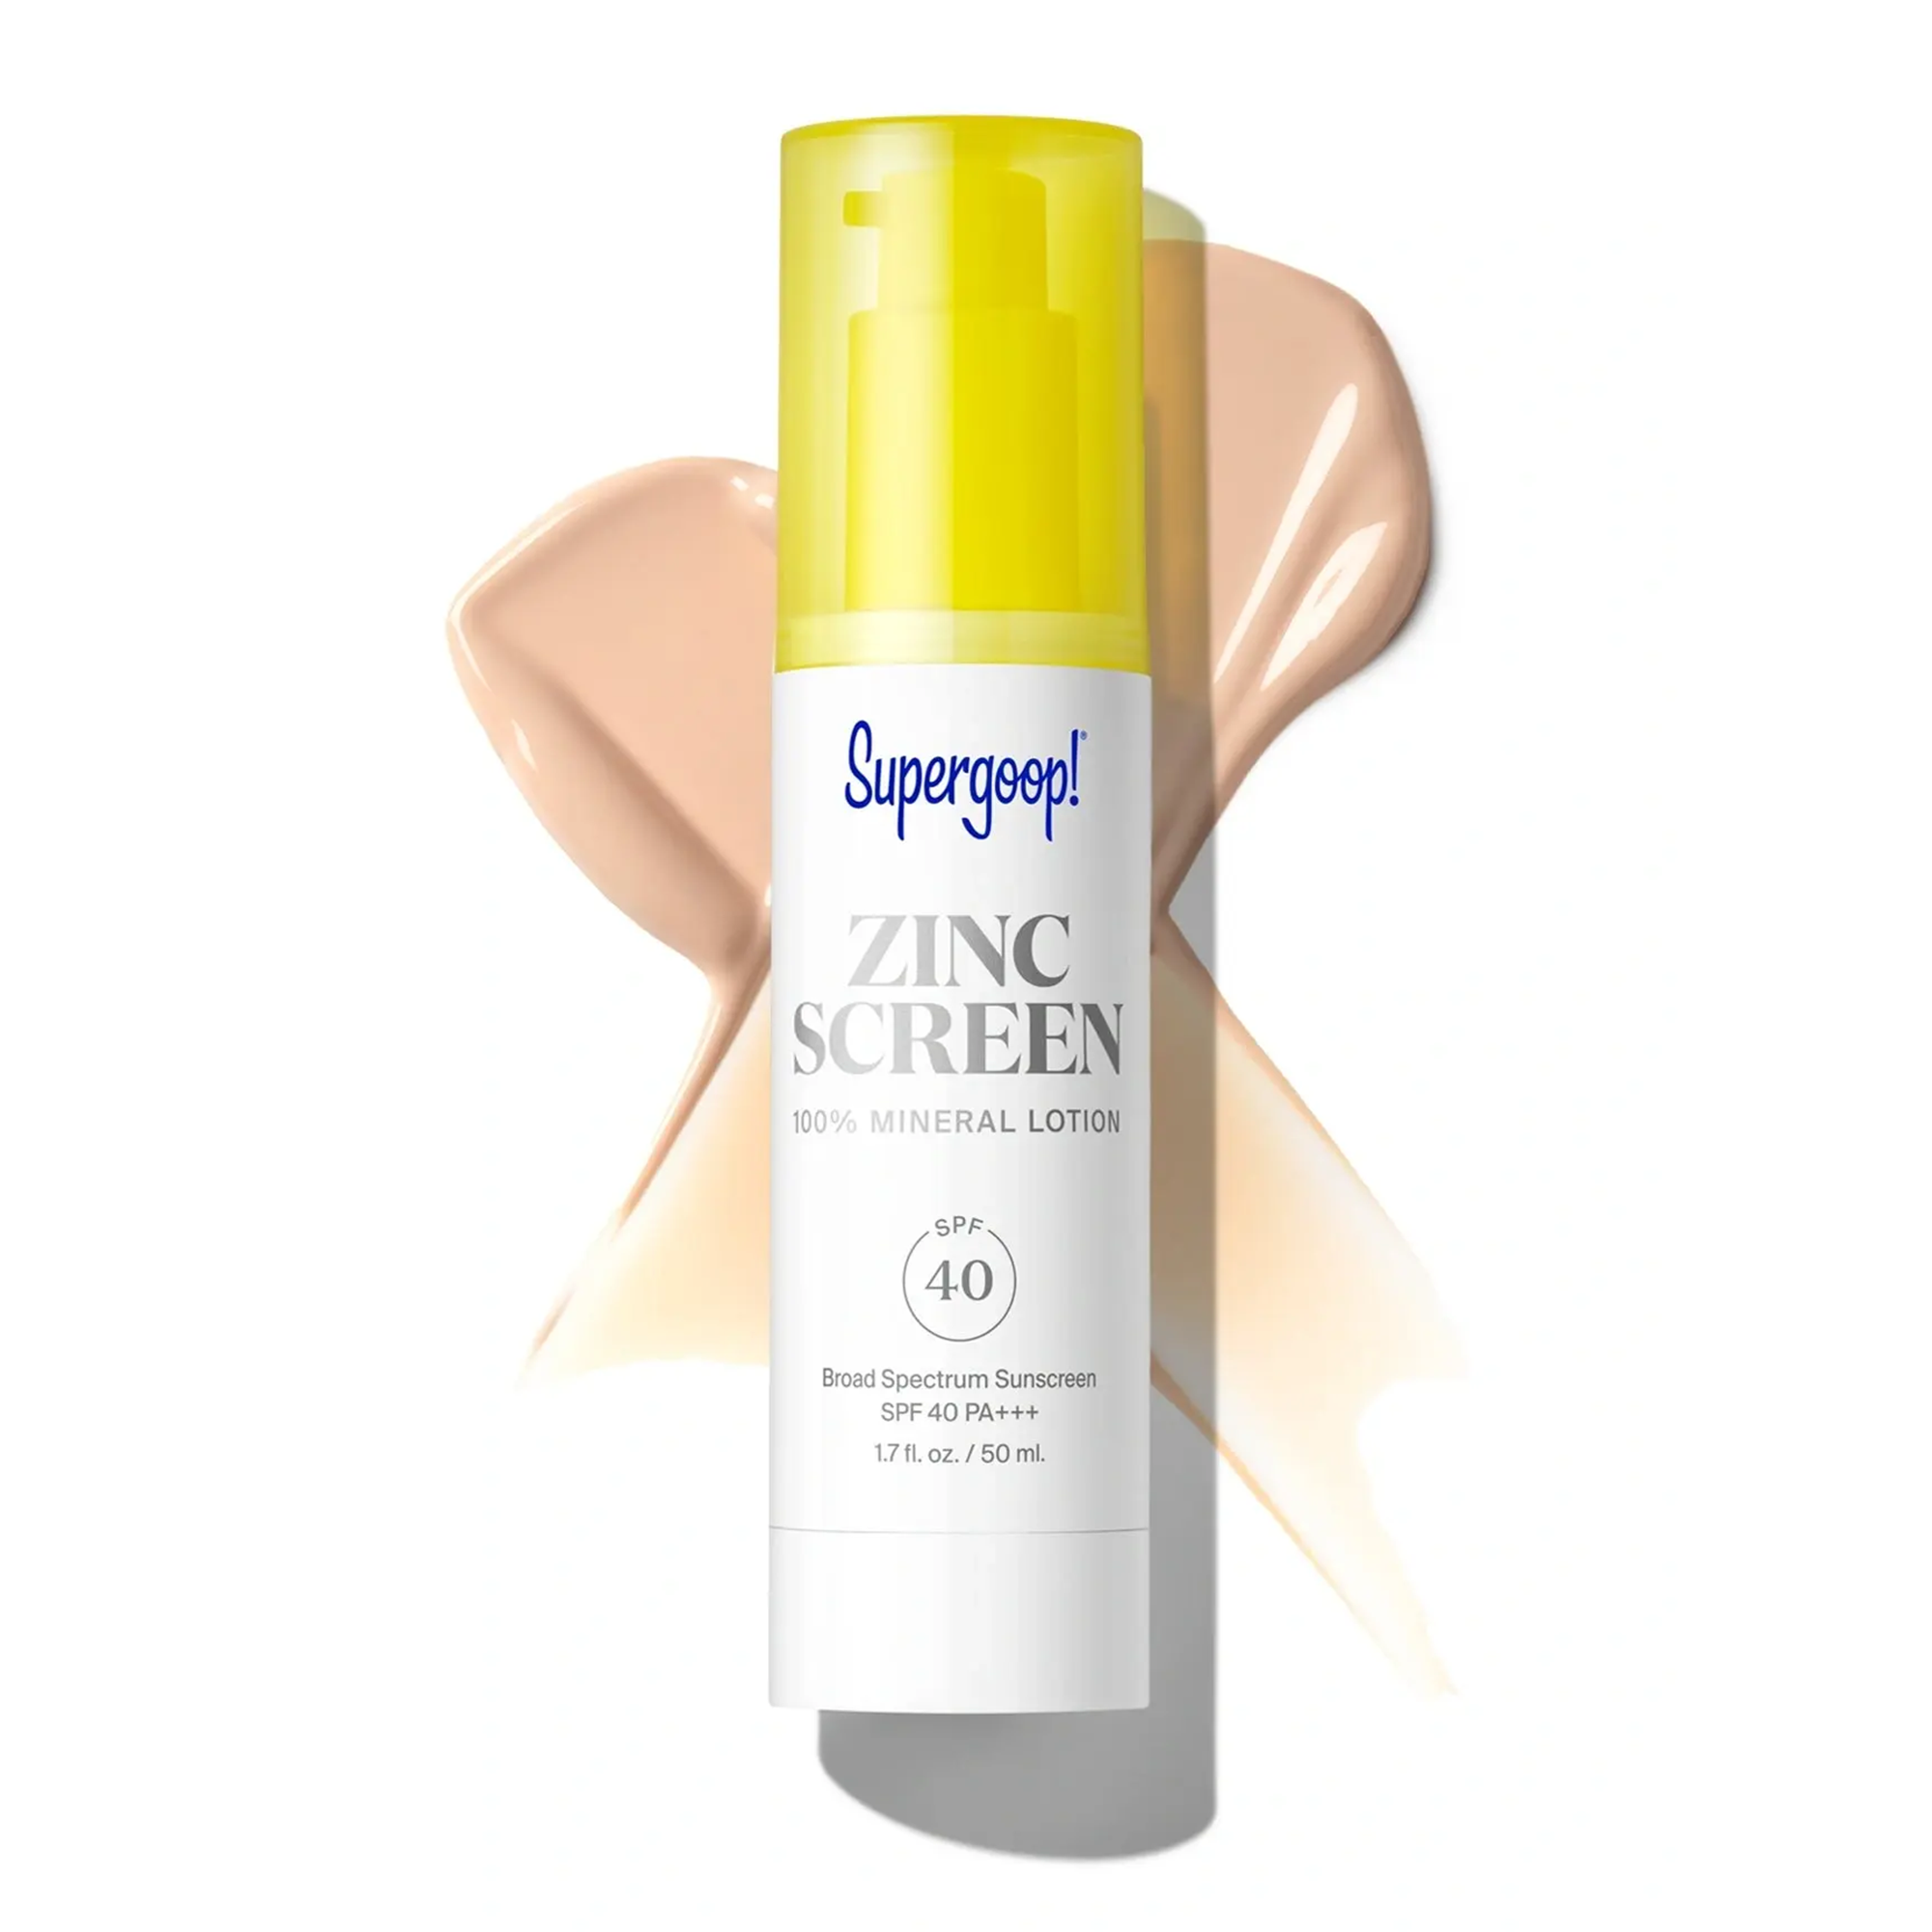 Supergoop! Zincscreen 100% Mineral Lotion SPF 40 / 1.7 oz